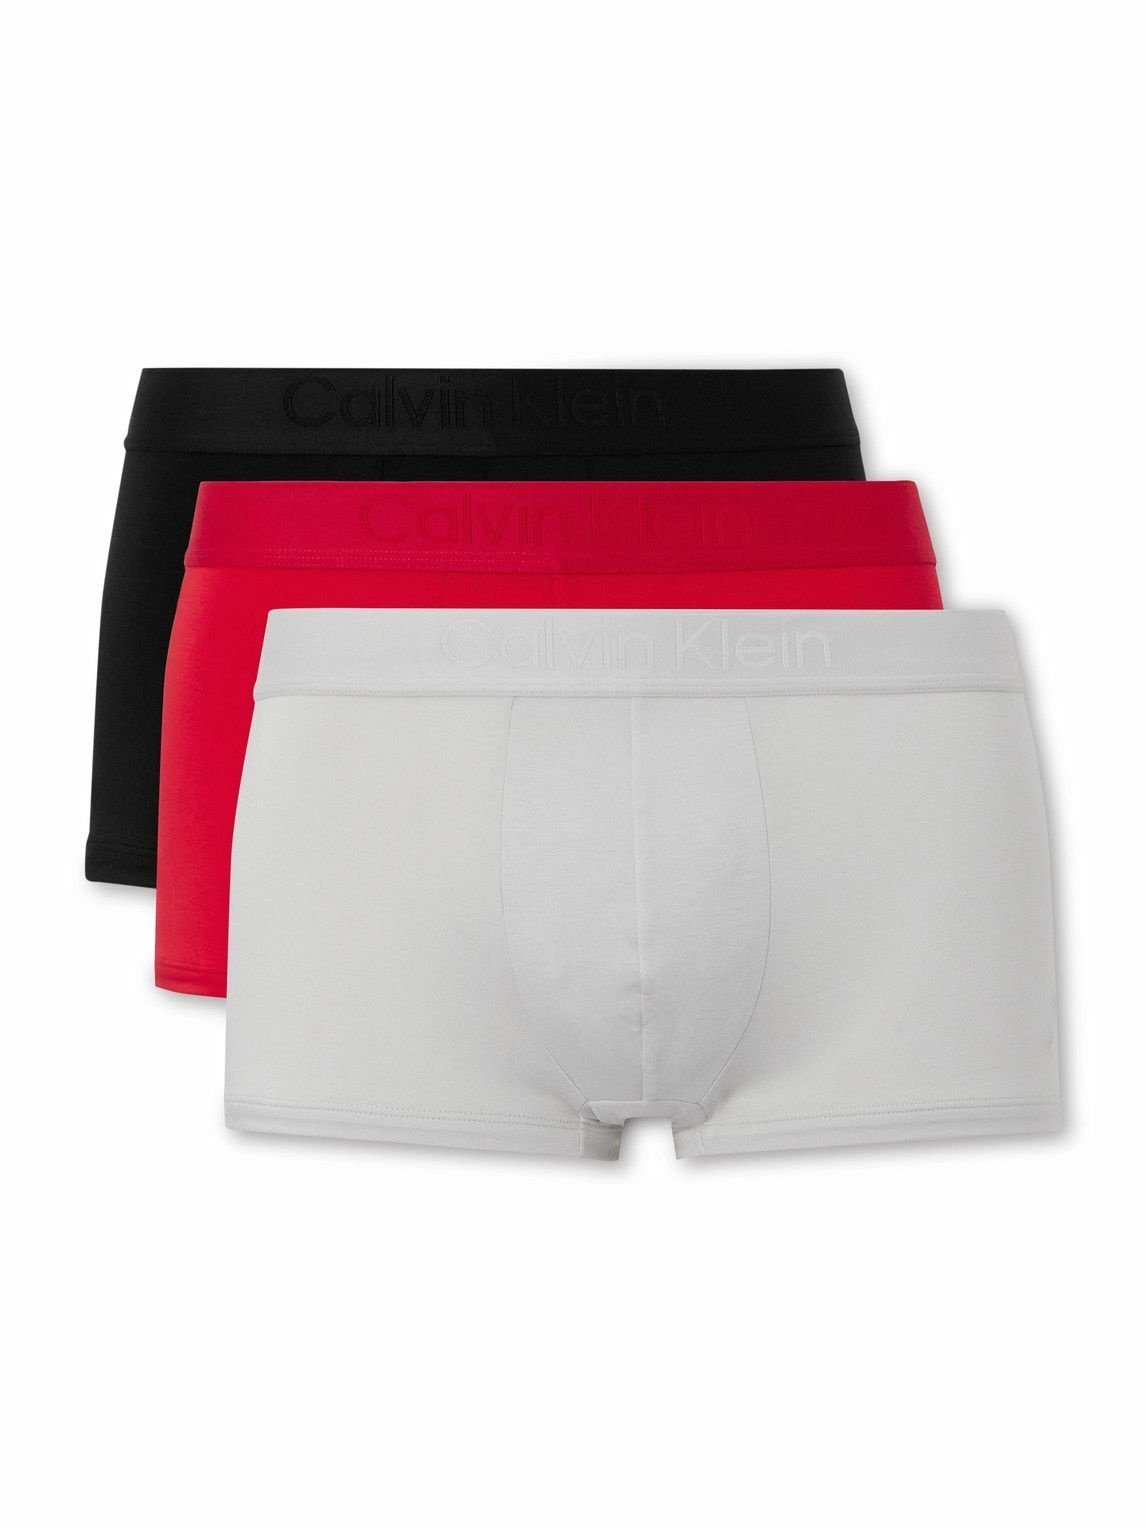 Calvin Klein Underwear: Three-Pack White Boxers